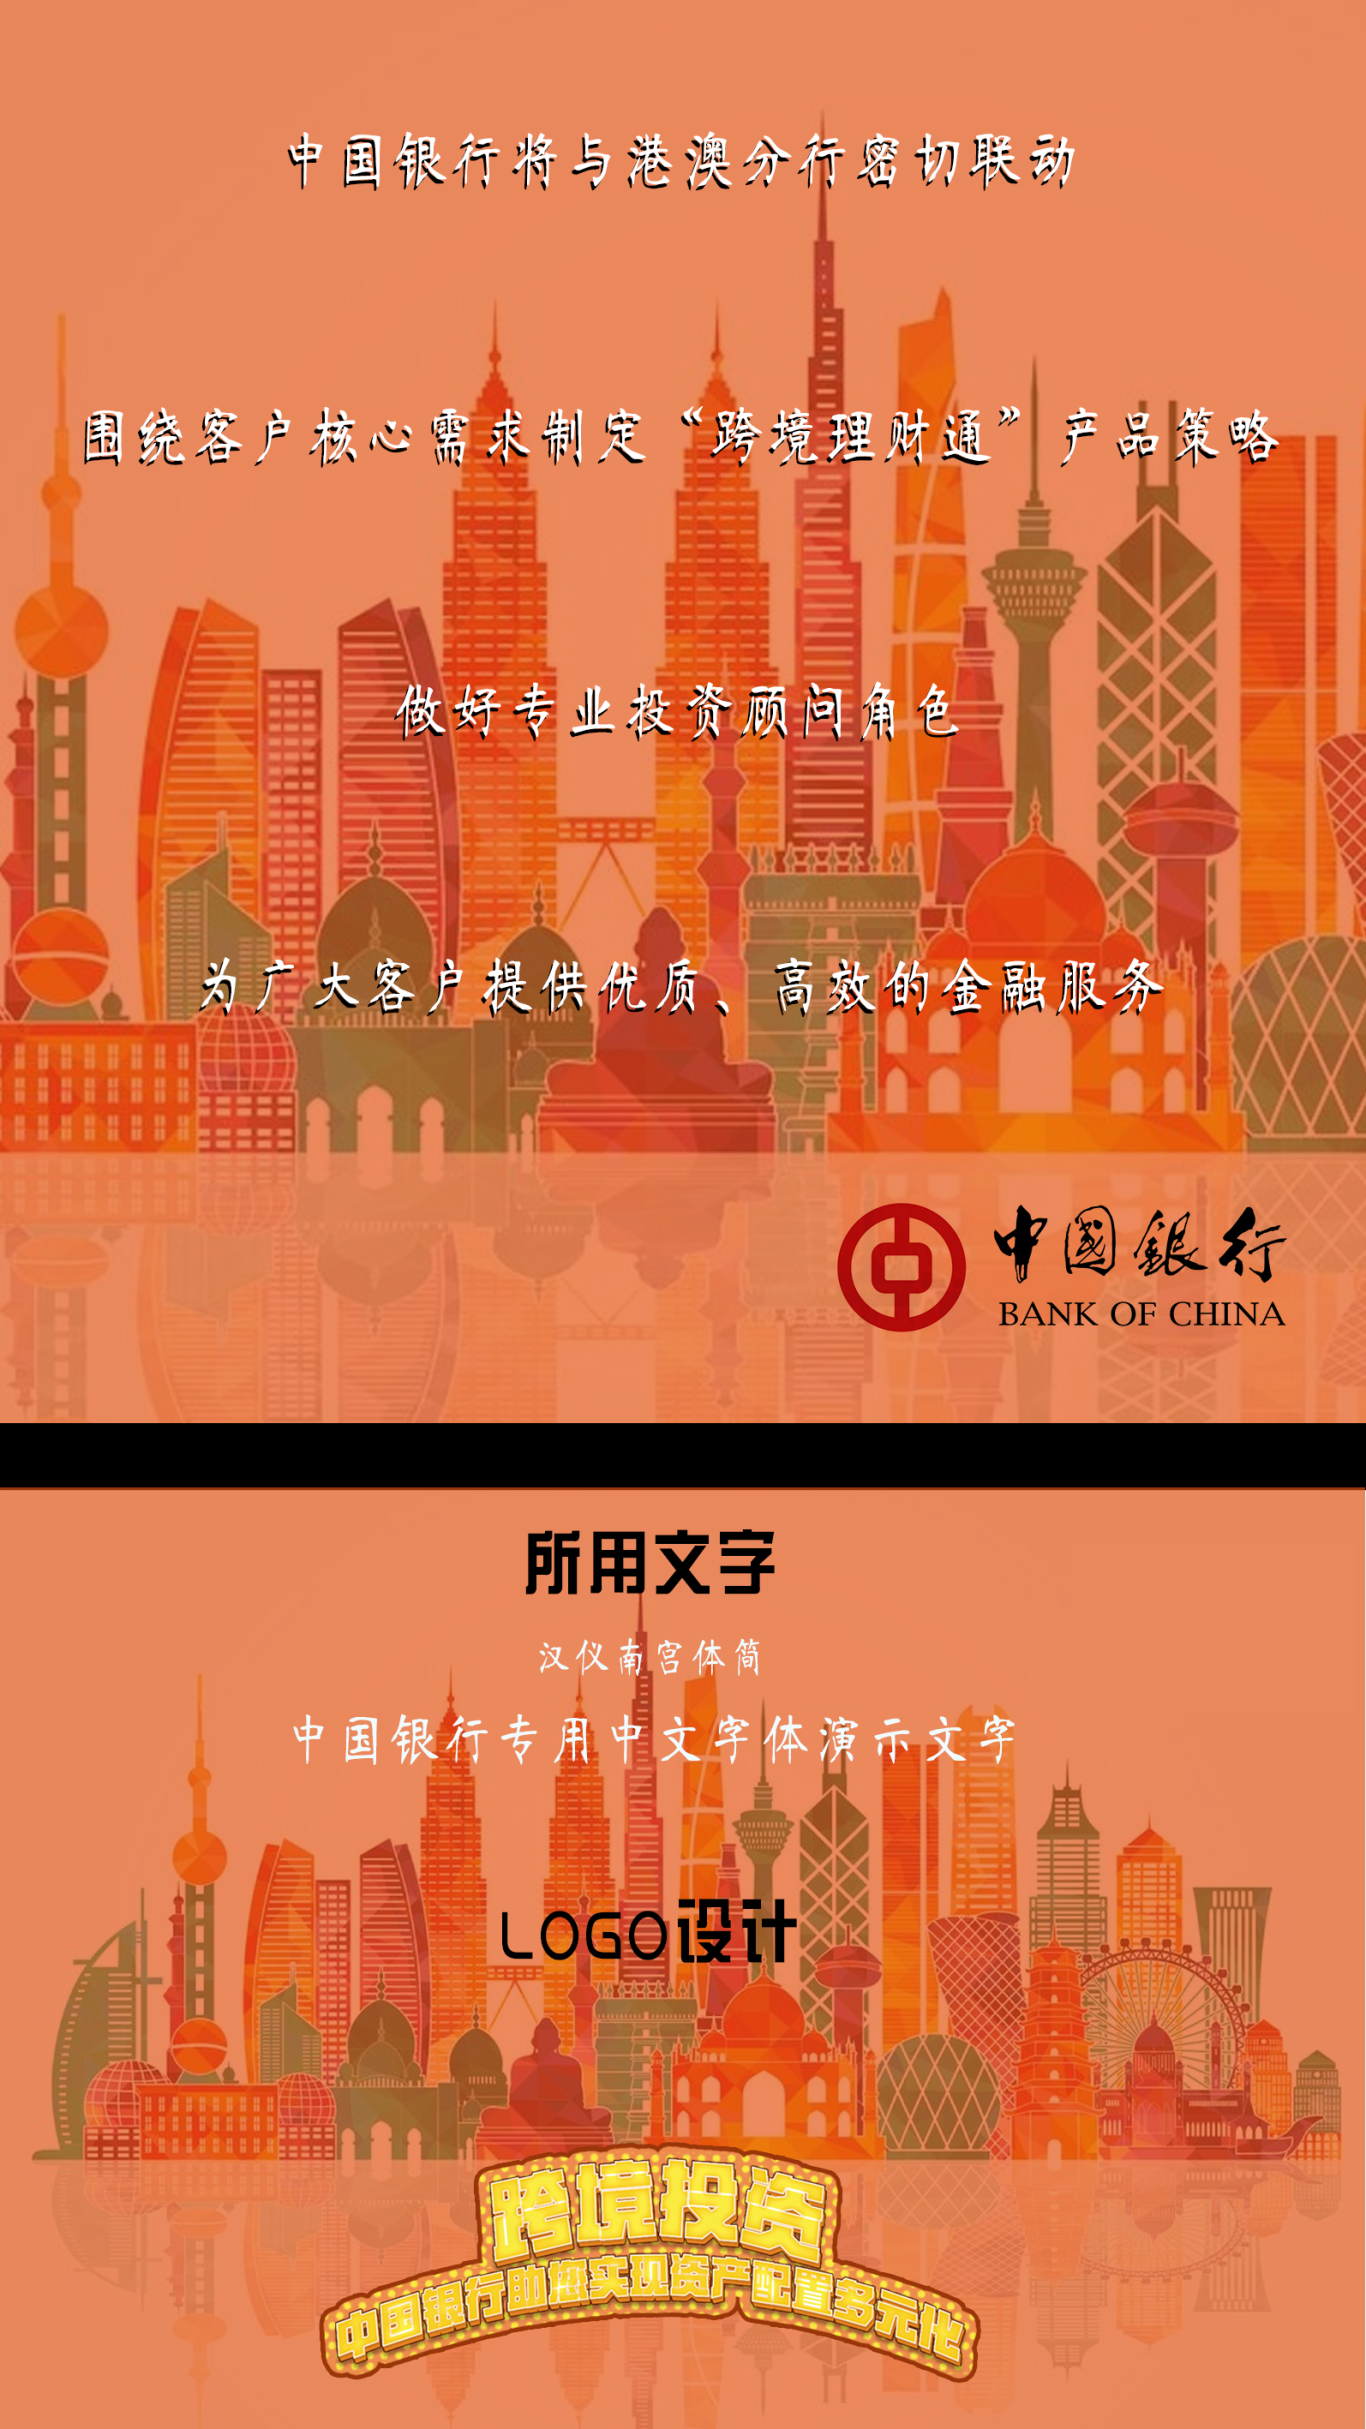 中国银行天河支行银行卡中心漫画制作图0